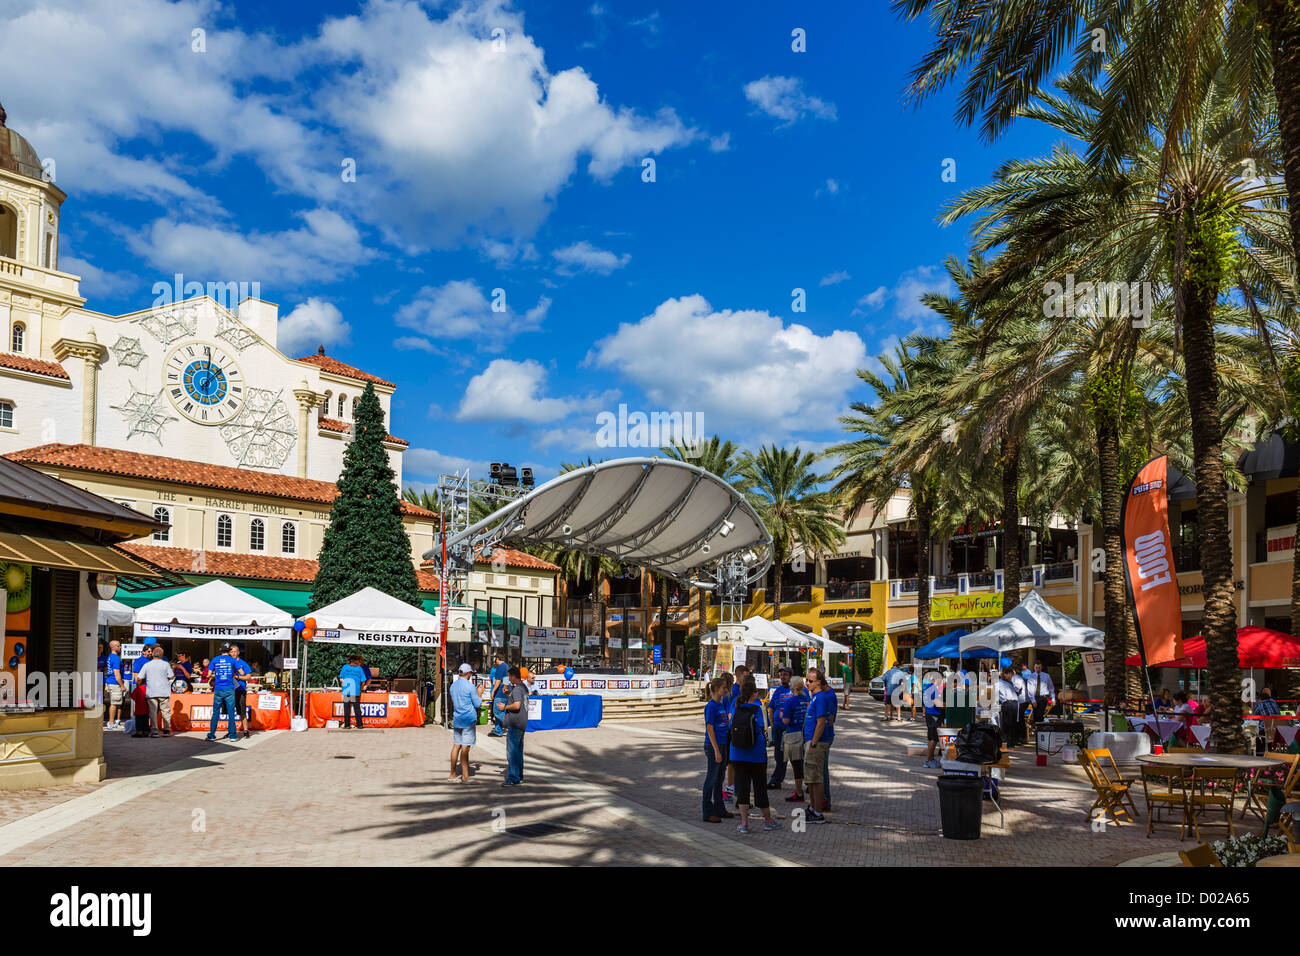 Cityplace desarrollo, South Rosemary Avenue, West Palm Beach, en la Costa del Tesoro, Florida, EE.UU. Foto de stock